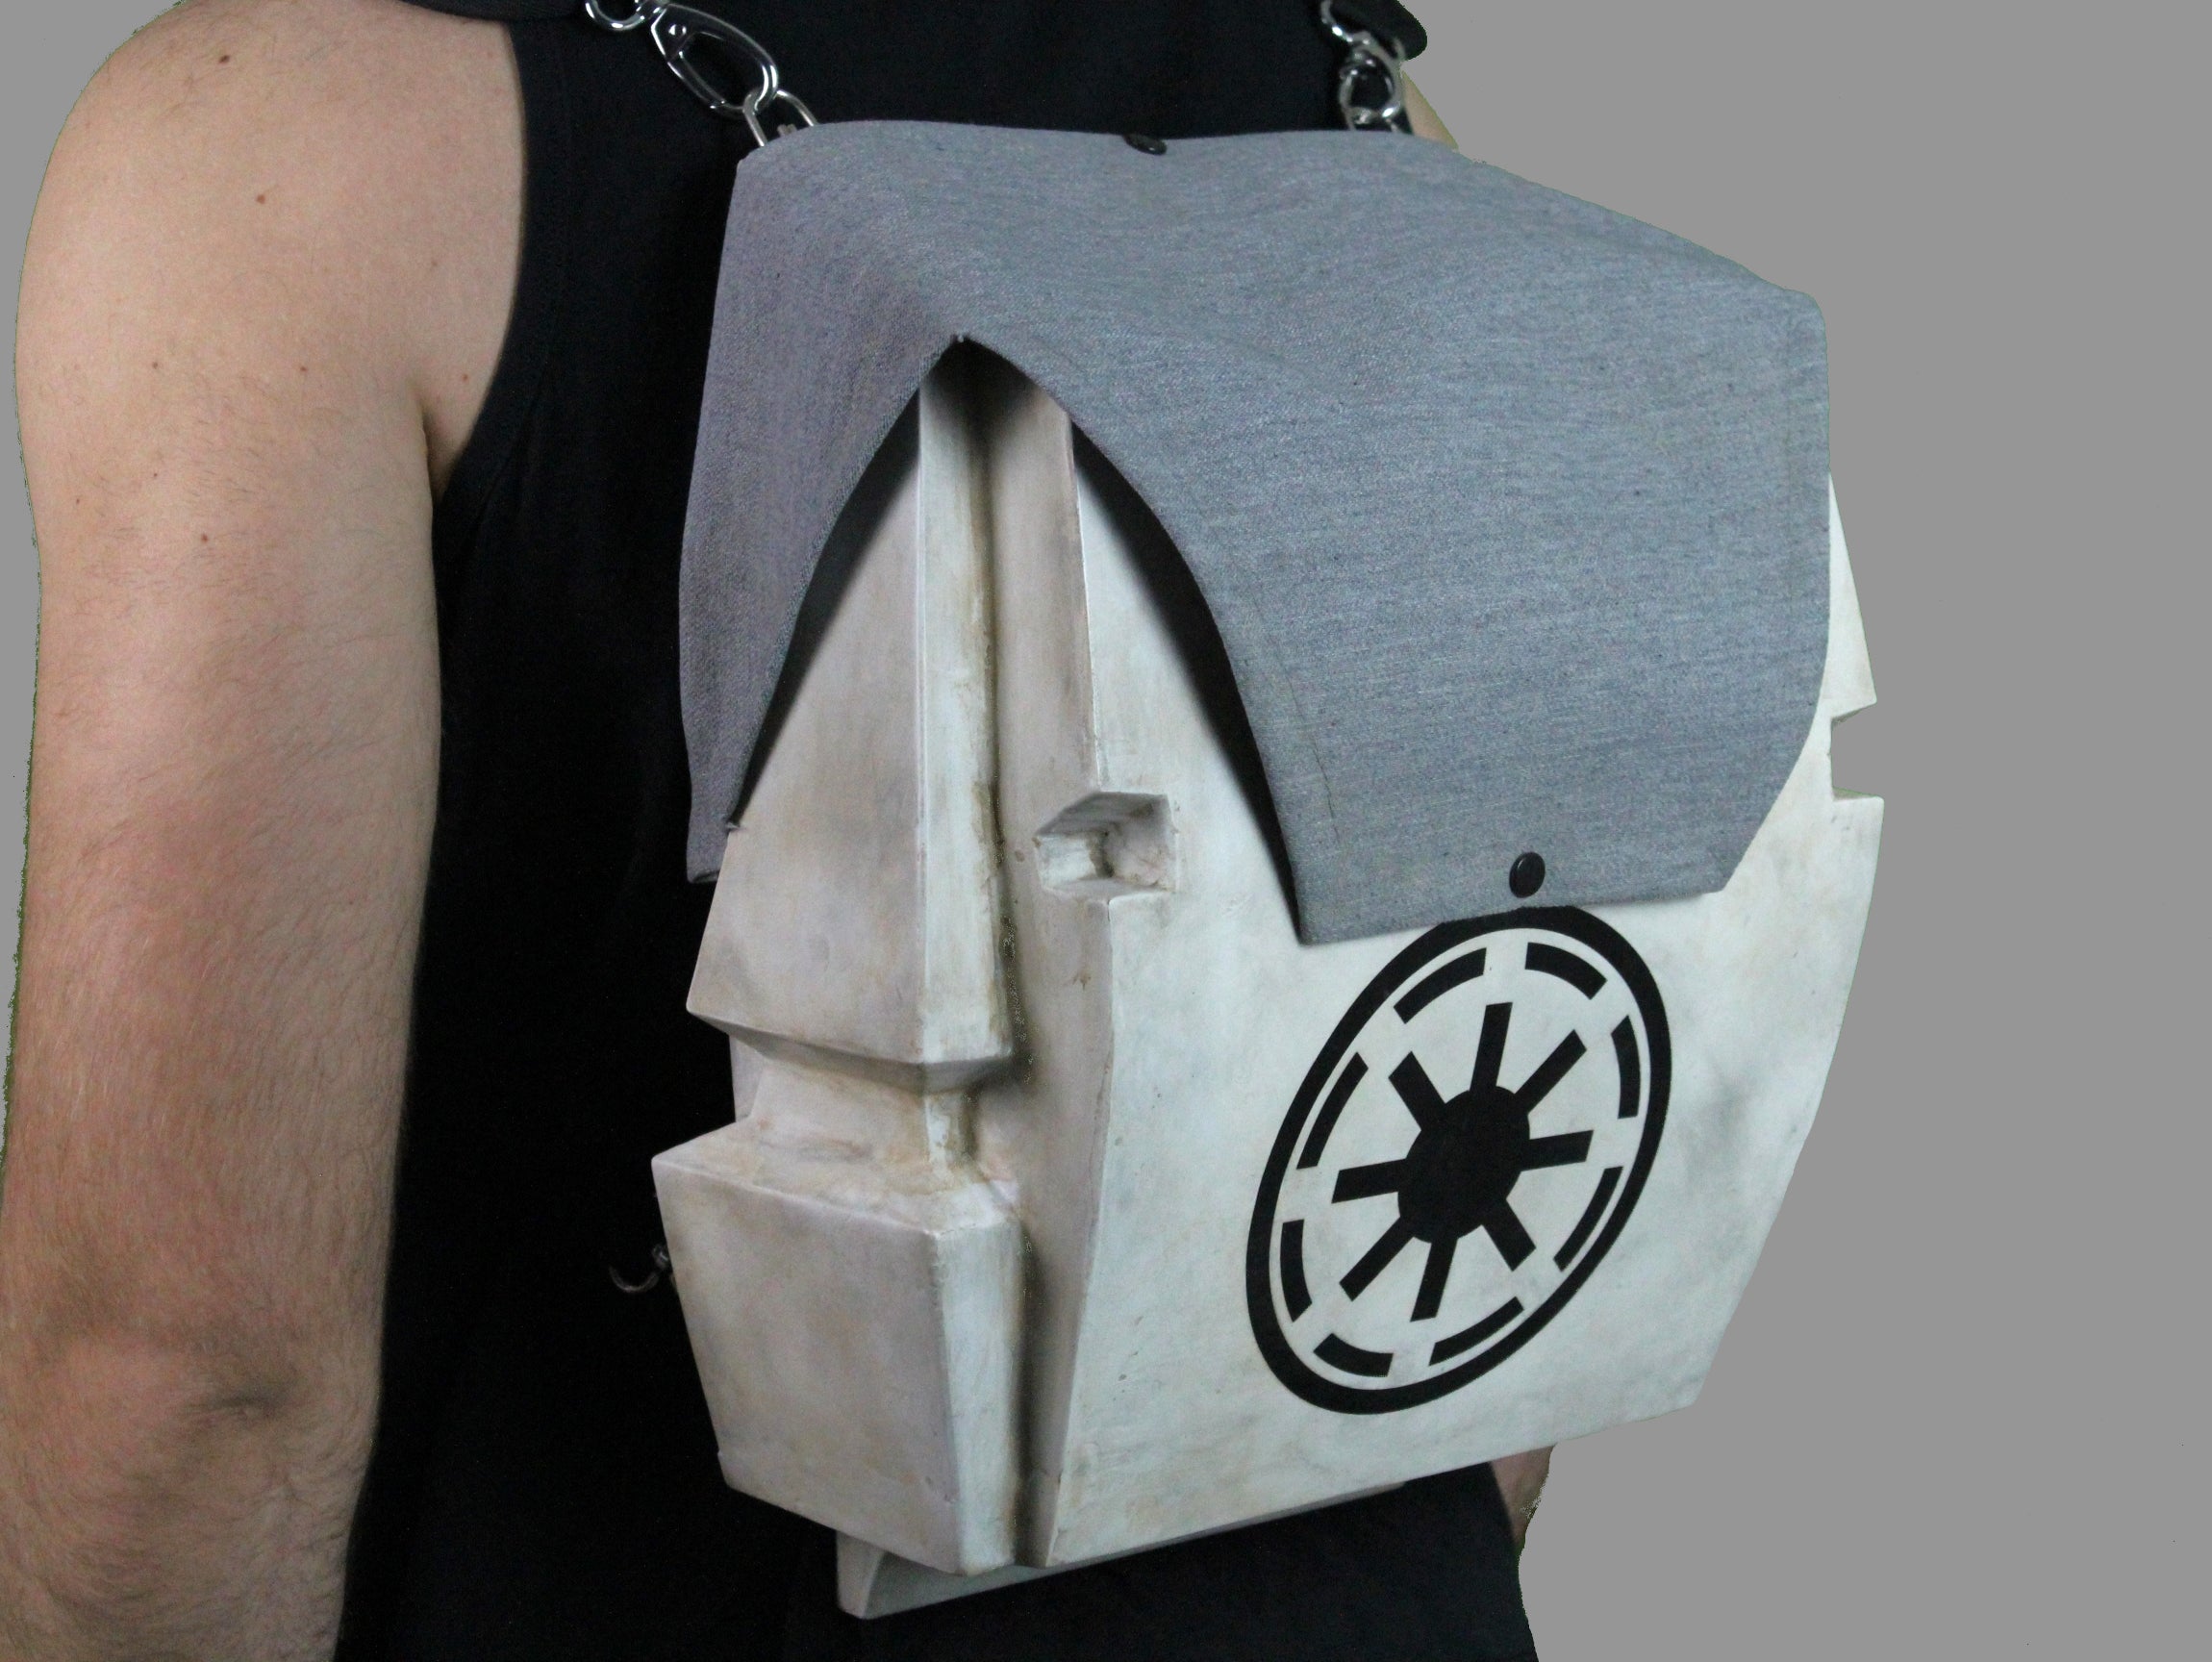 Clone Trooper Backpack - DIY